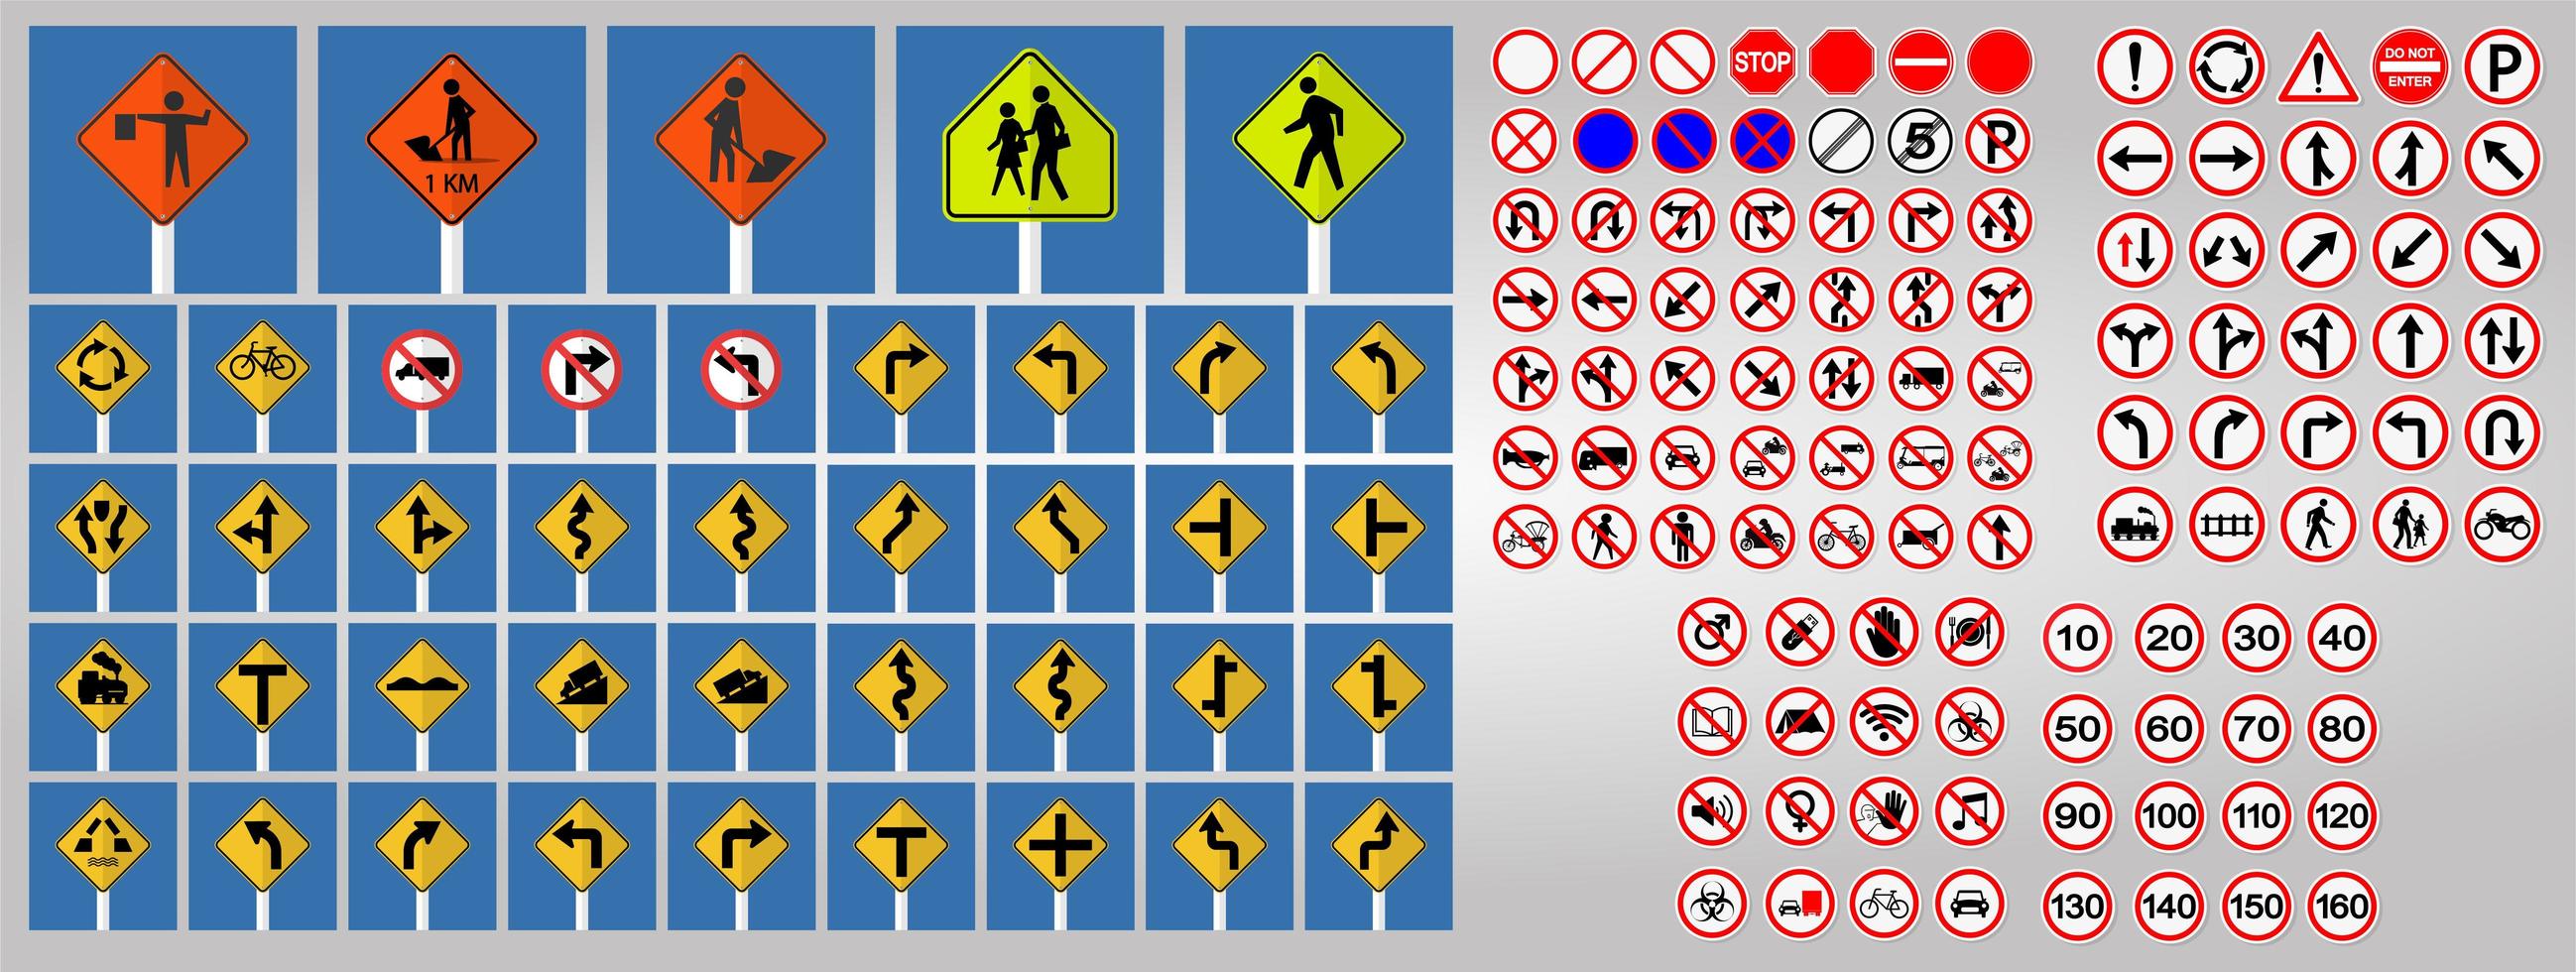 Satz Verkehrszeichen, verbotene und warnende rote Kreissymbol-Zeichen vektor